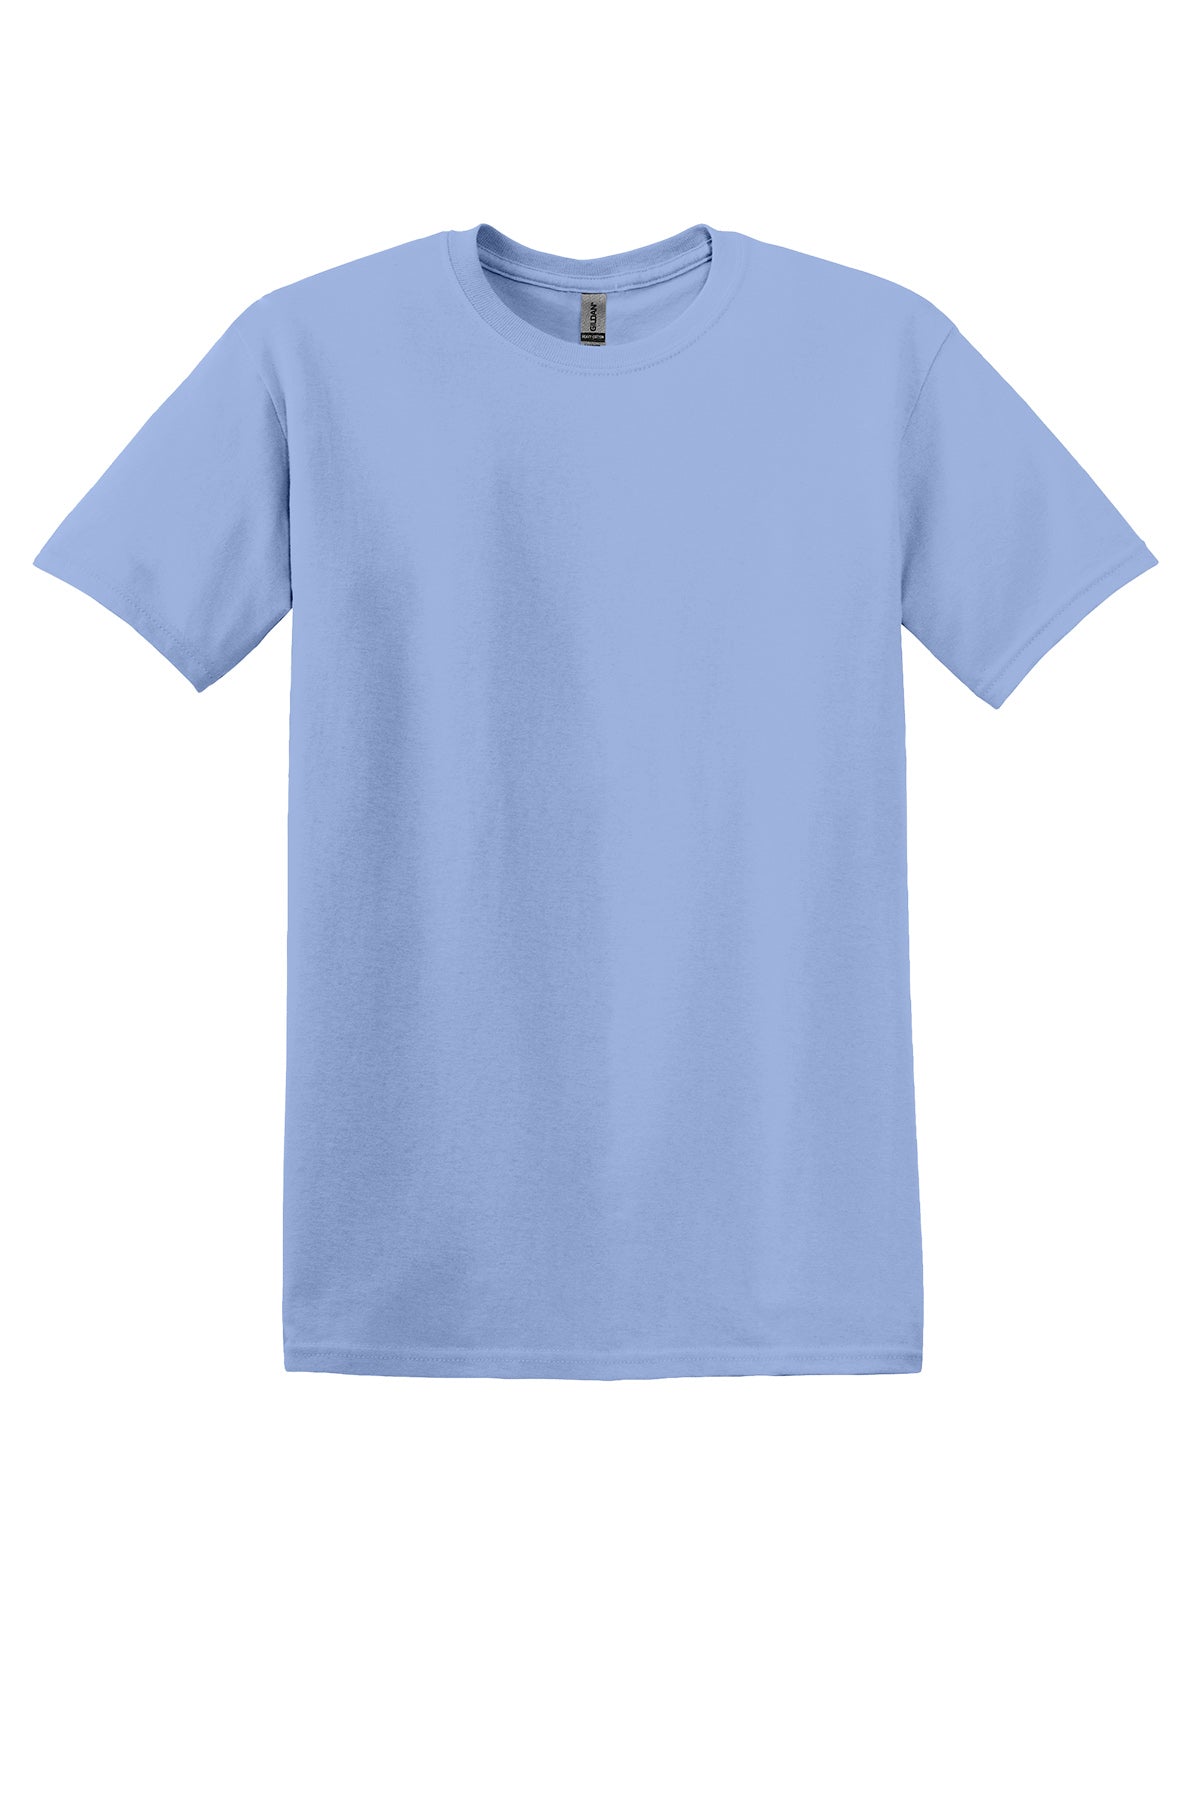 Gildan 5000B Youth T-Shirt Yth X-Small / Columbia Blue